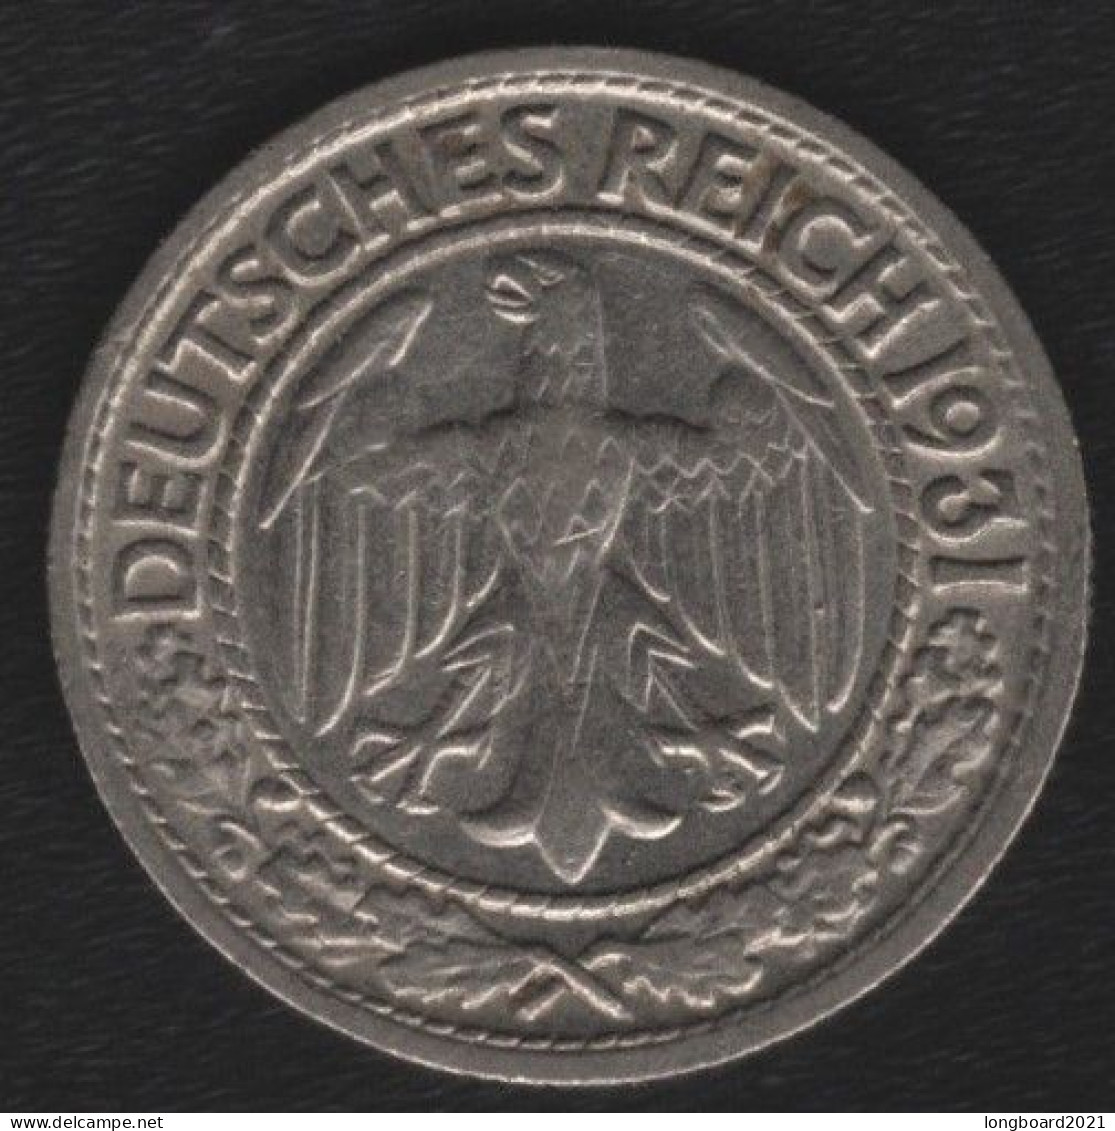 DEUTSCHES REICH - 50 REICHSPFENNIG 1931D - 1 Marco & 1 Reichsmark